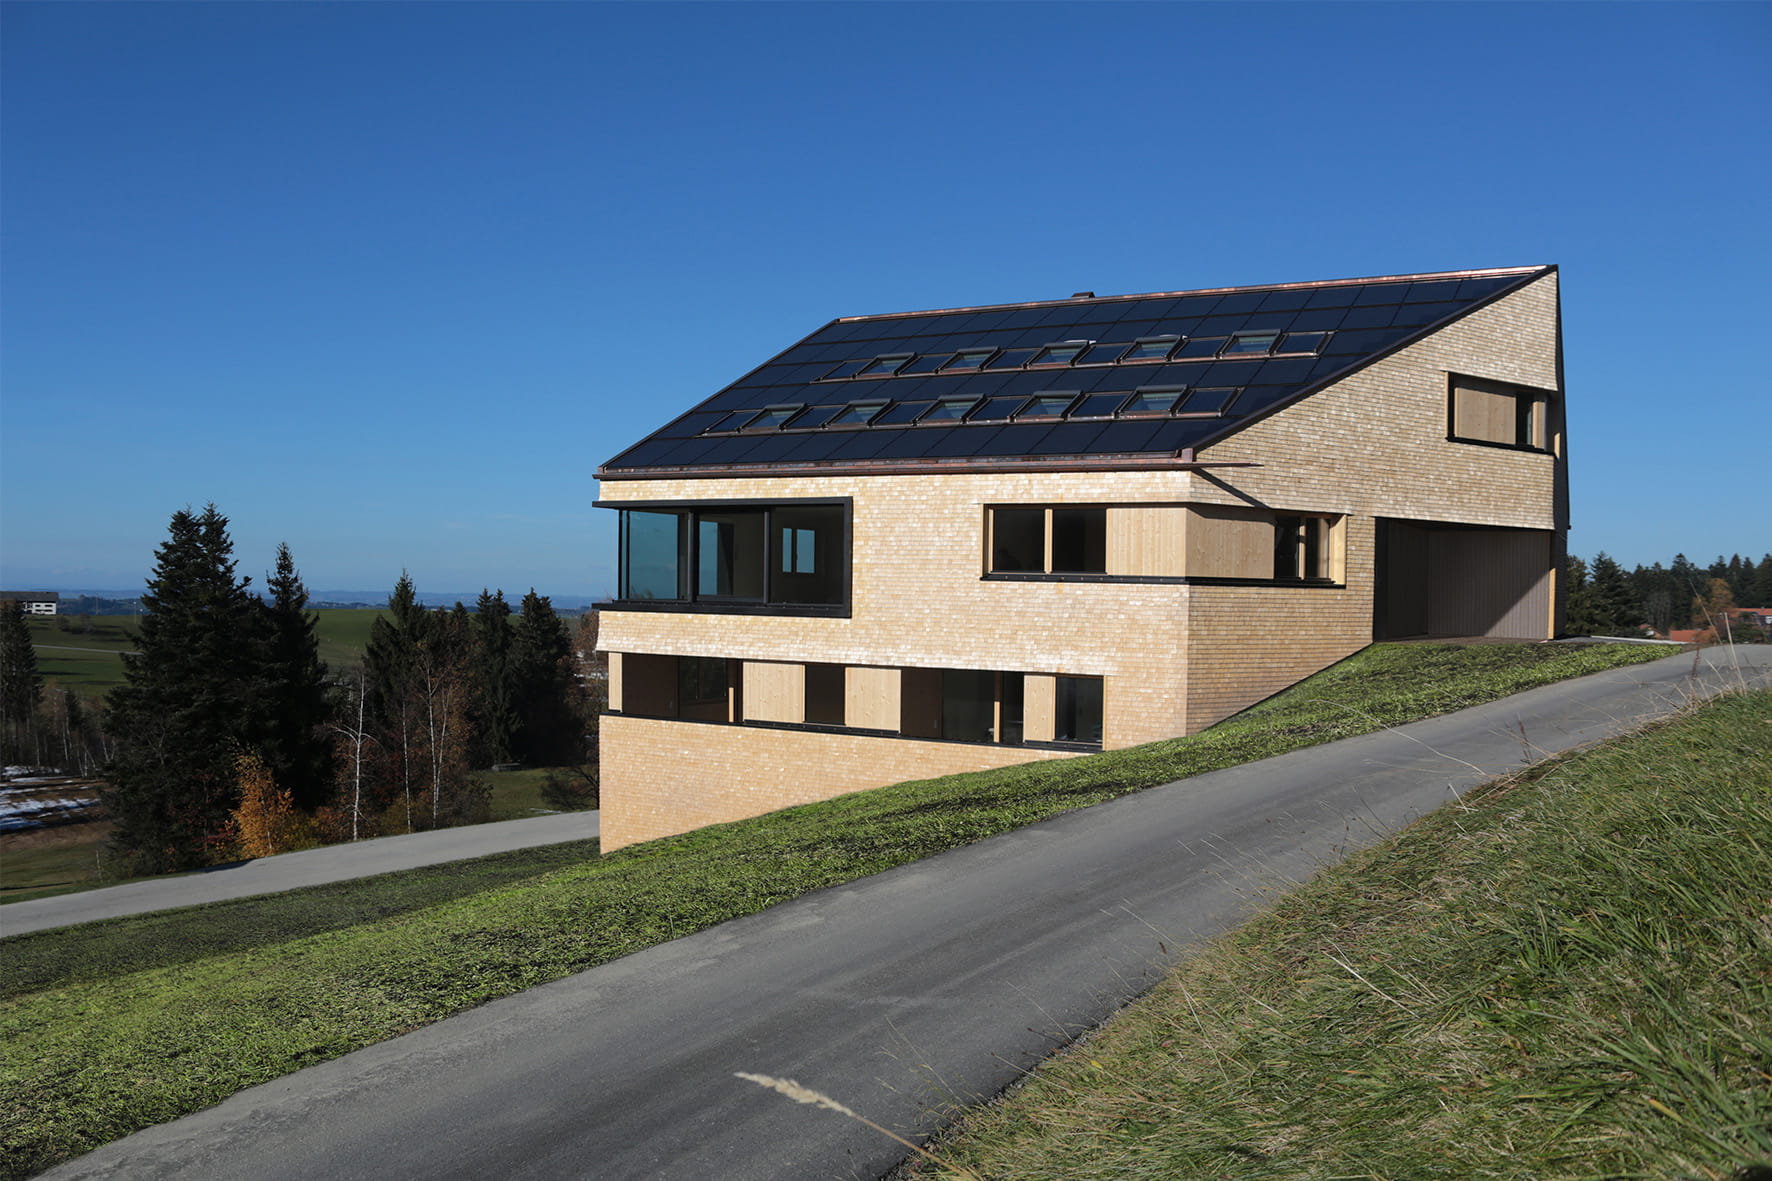 Nachhaltiges modernes Zuhause mit VELUX Dachflächenfenstern an einem grünen Hang unter blauem Himmel.